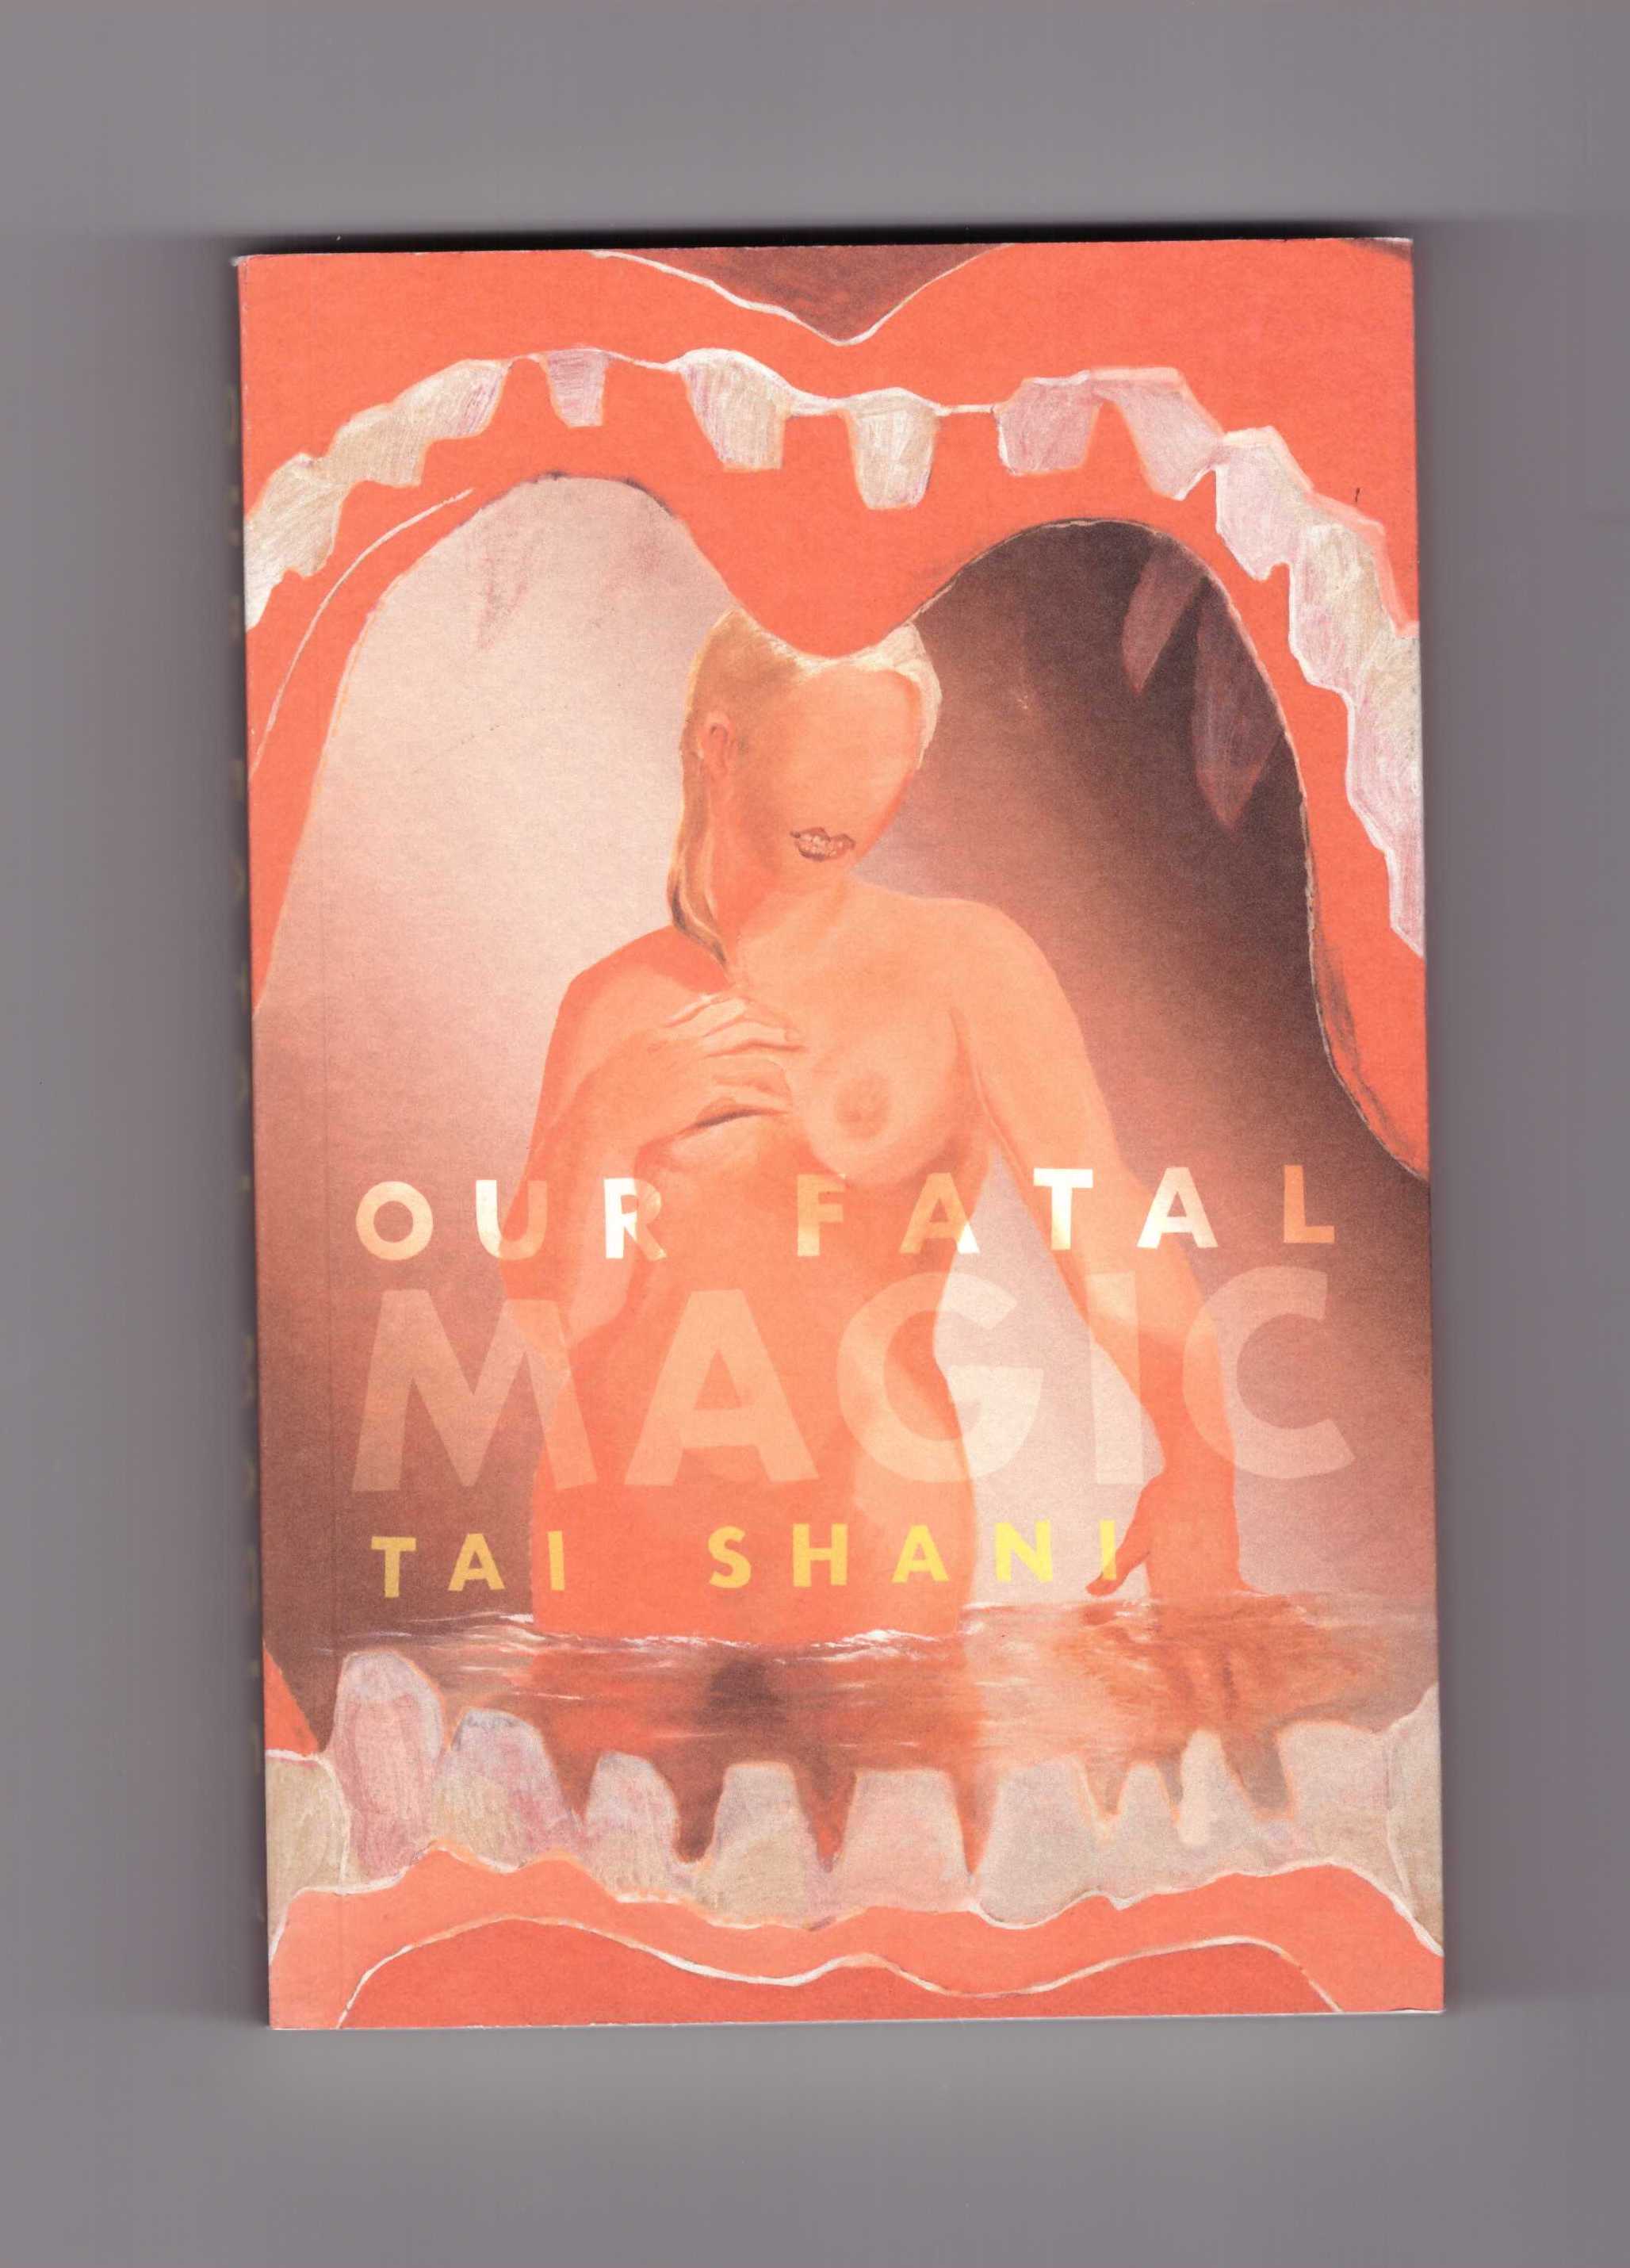 SHANI, Tai - Our Fatal Magic